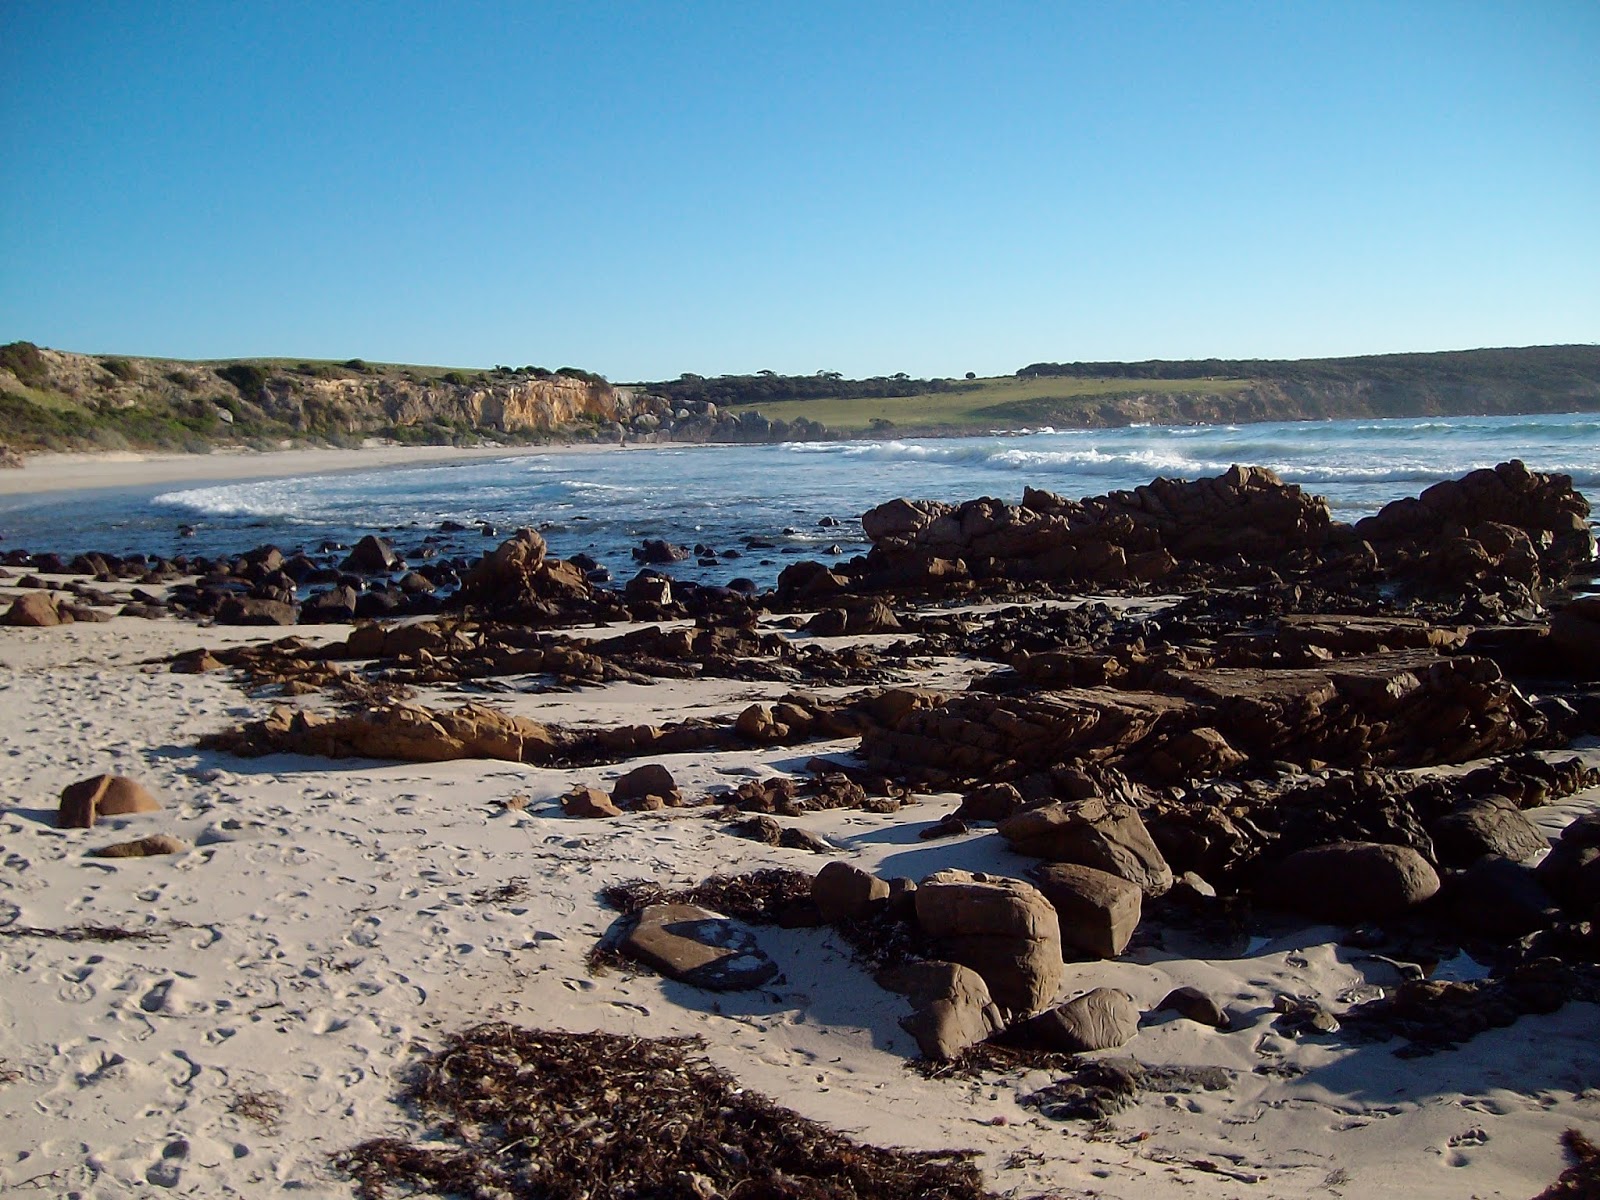 Photo de Stokes Bay Beach - endroit populaire parmi les connaisseurs de la détente